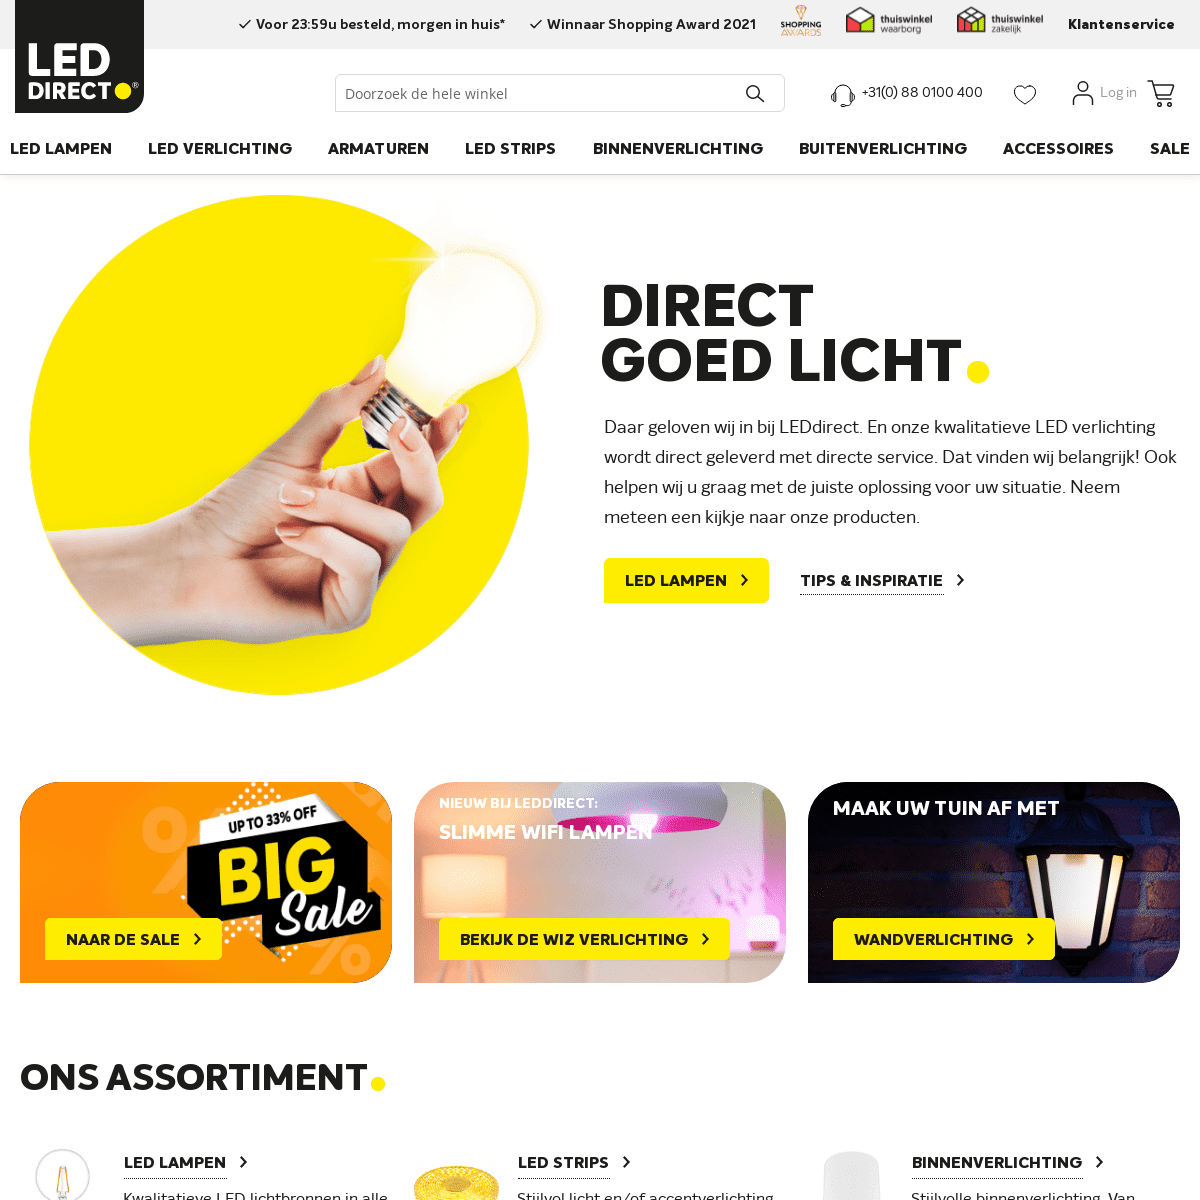 A complete backup of https://ledlampendirect.nl